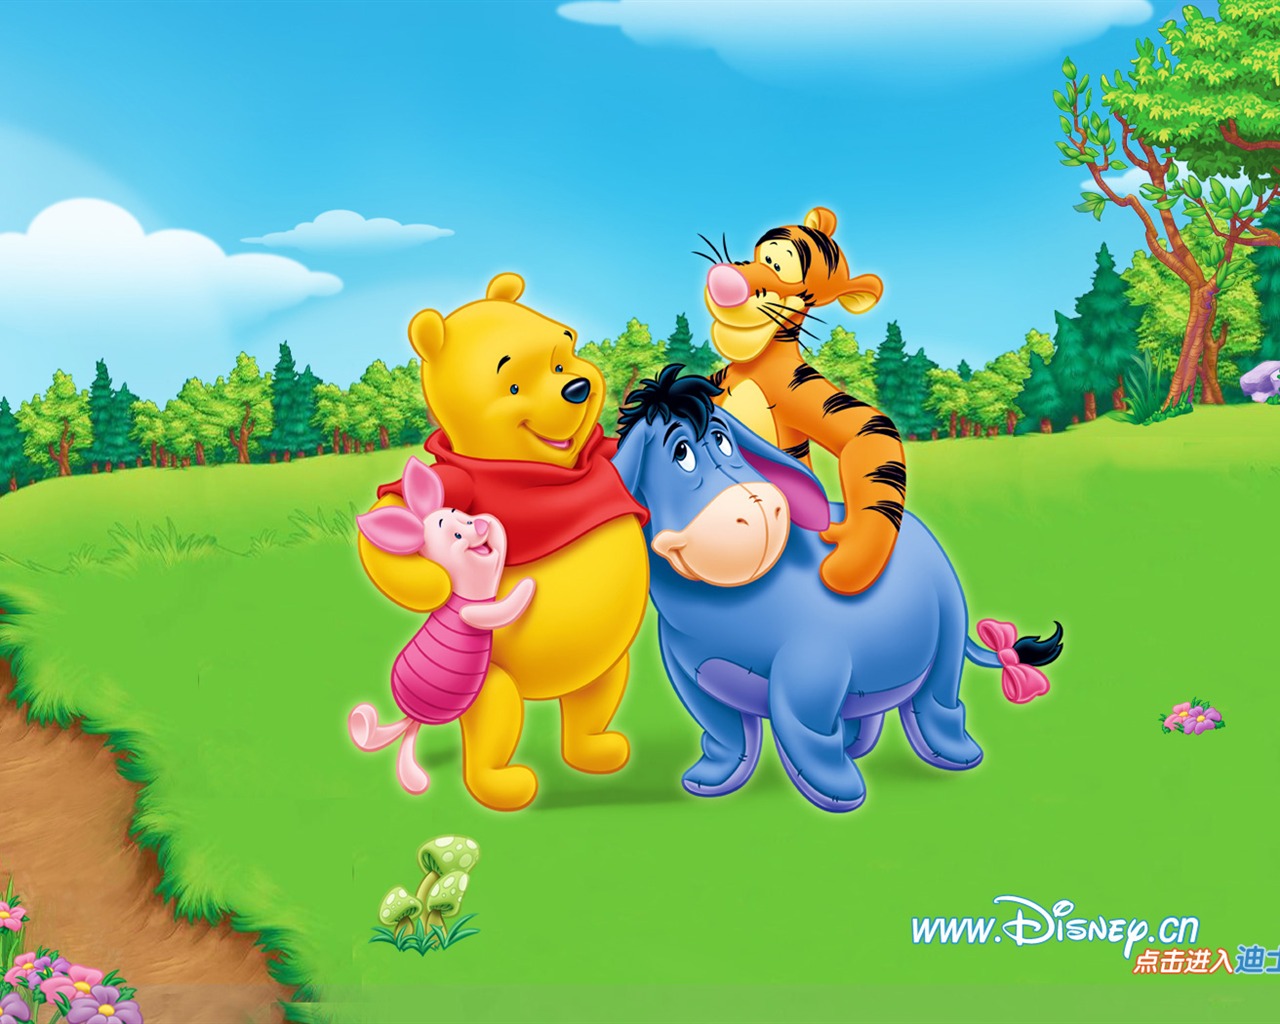 Walt Disney cartoon Winnie the Pooh wallpaper (1) #14 - 1280x1024